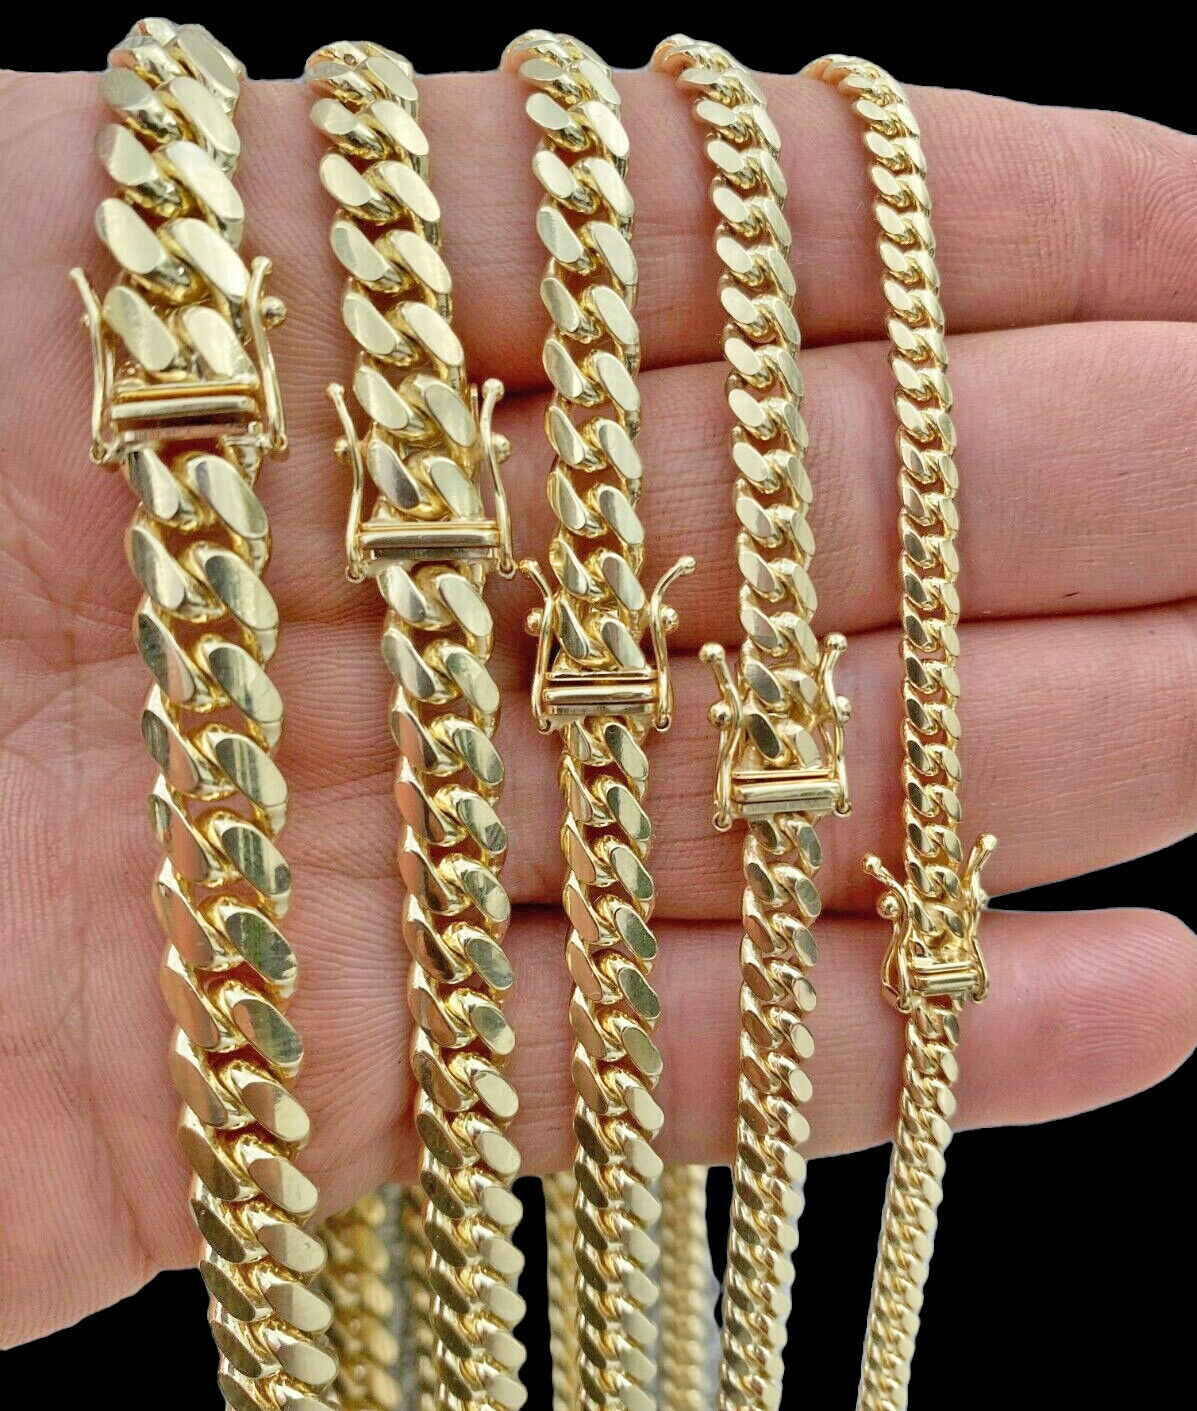 Men's Miami Cuban Link Chain Necklace